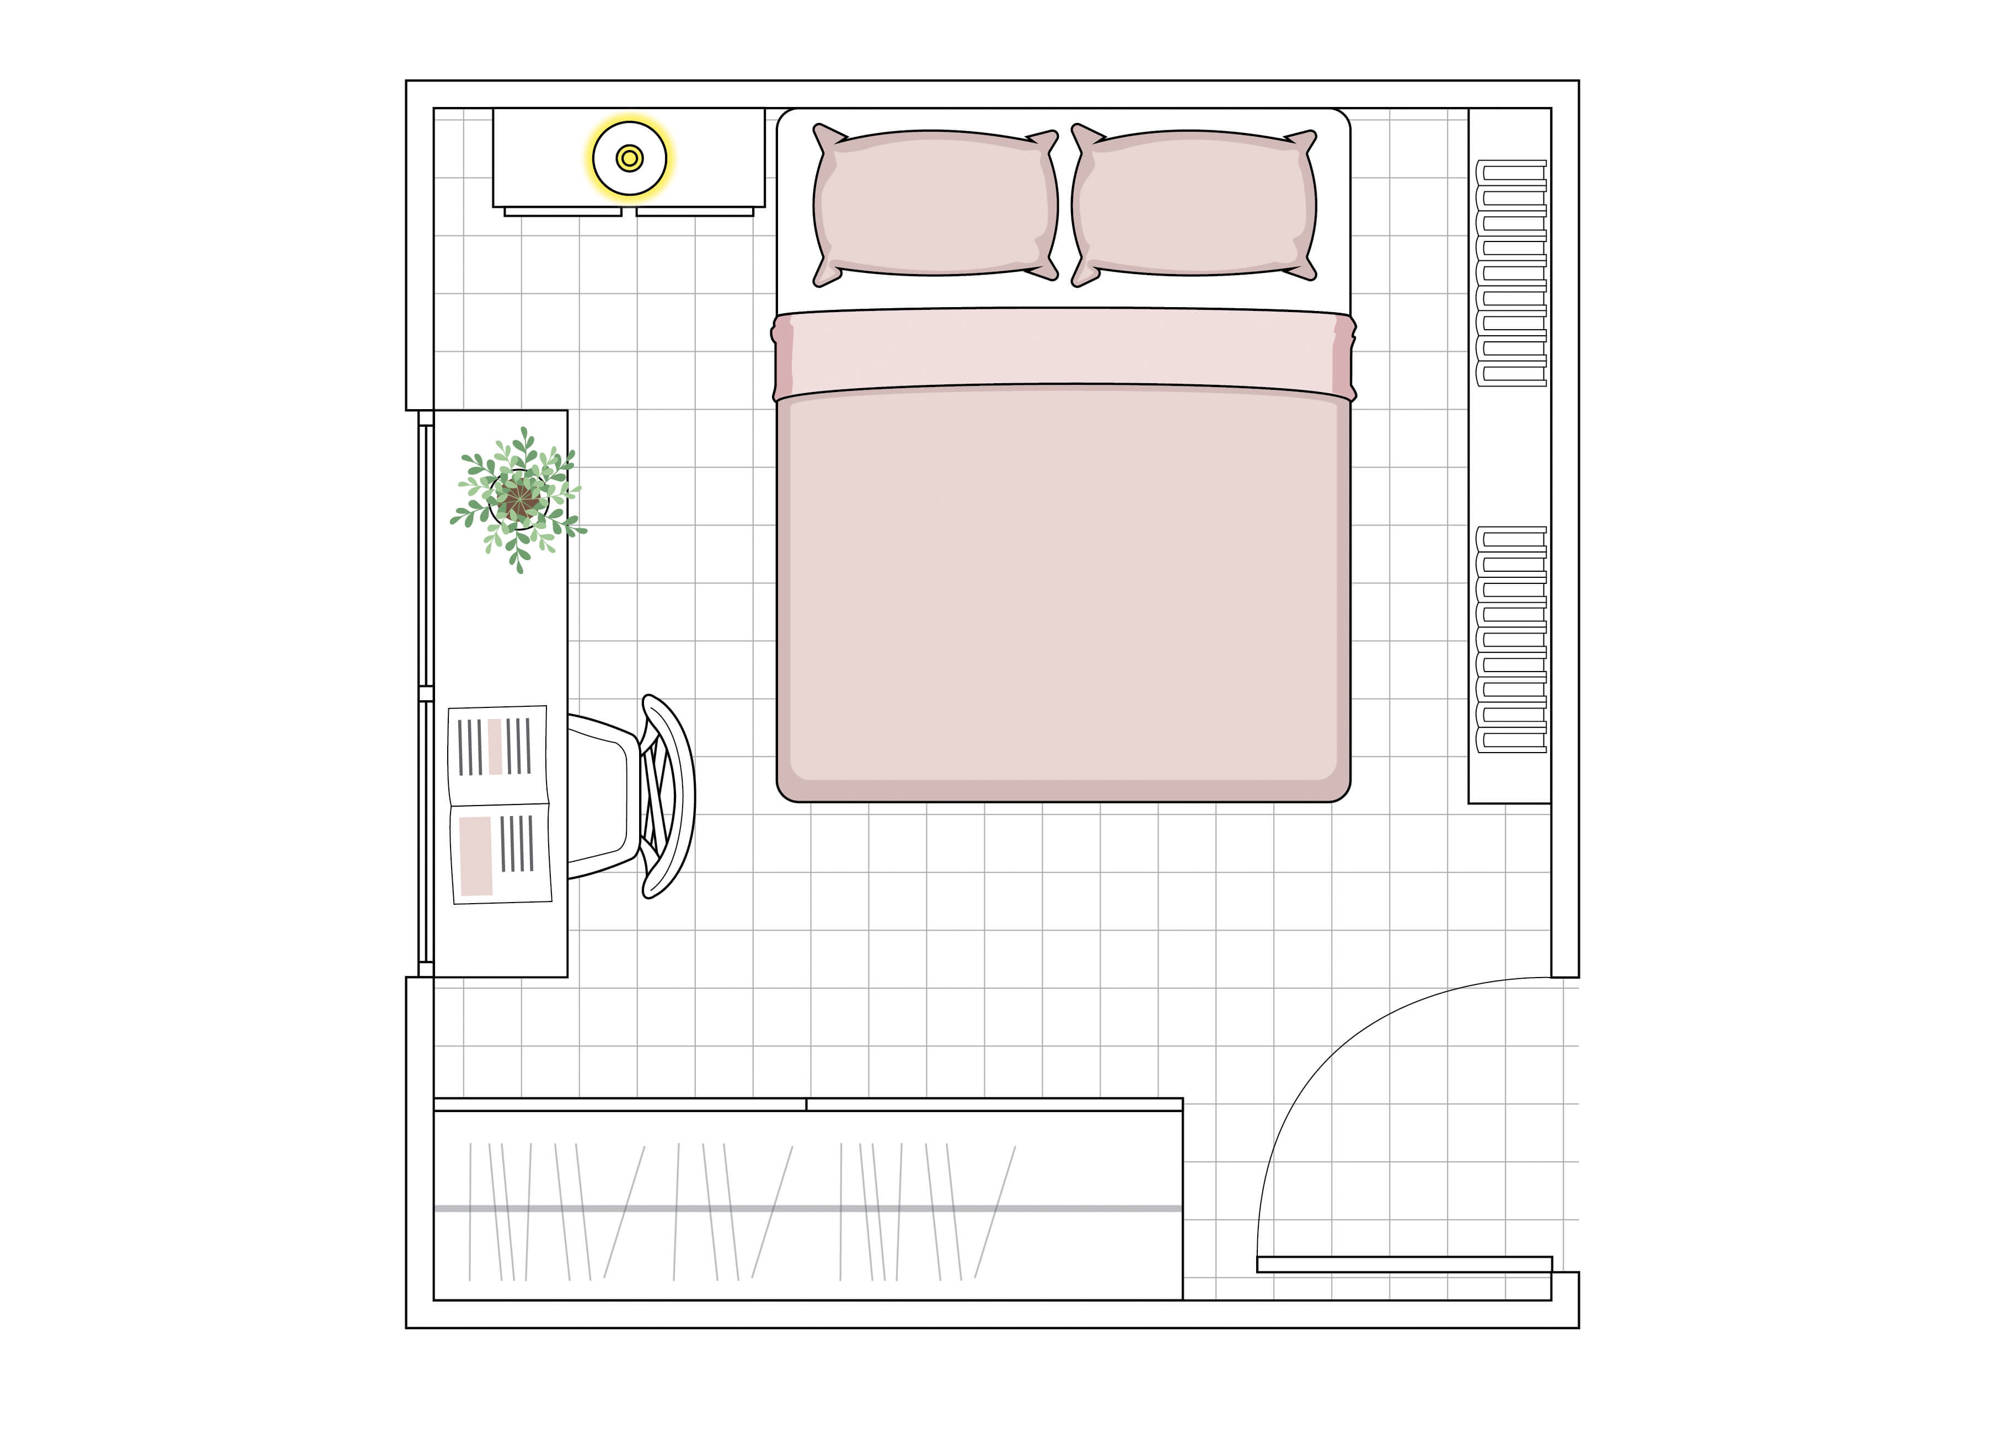 00520116 plano de dormitorio pequeño